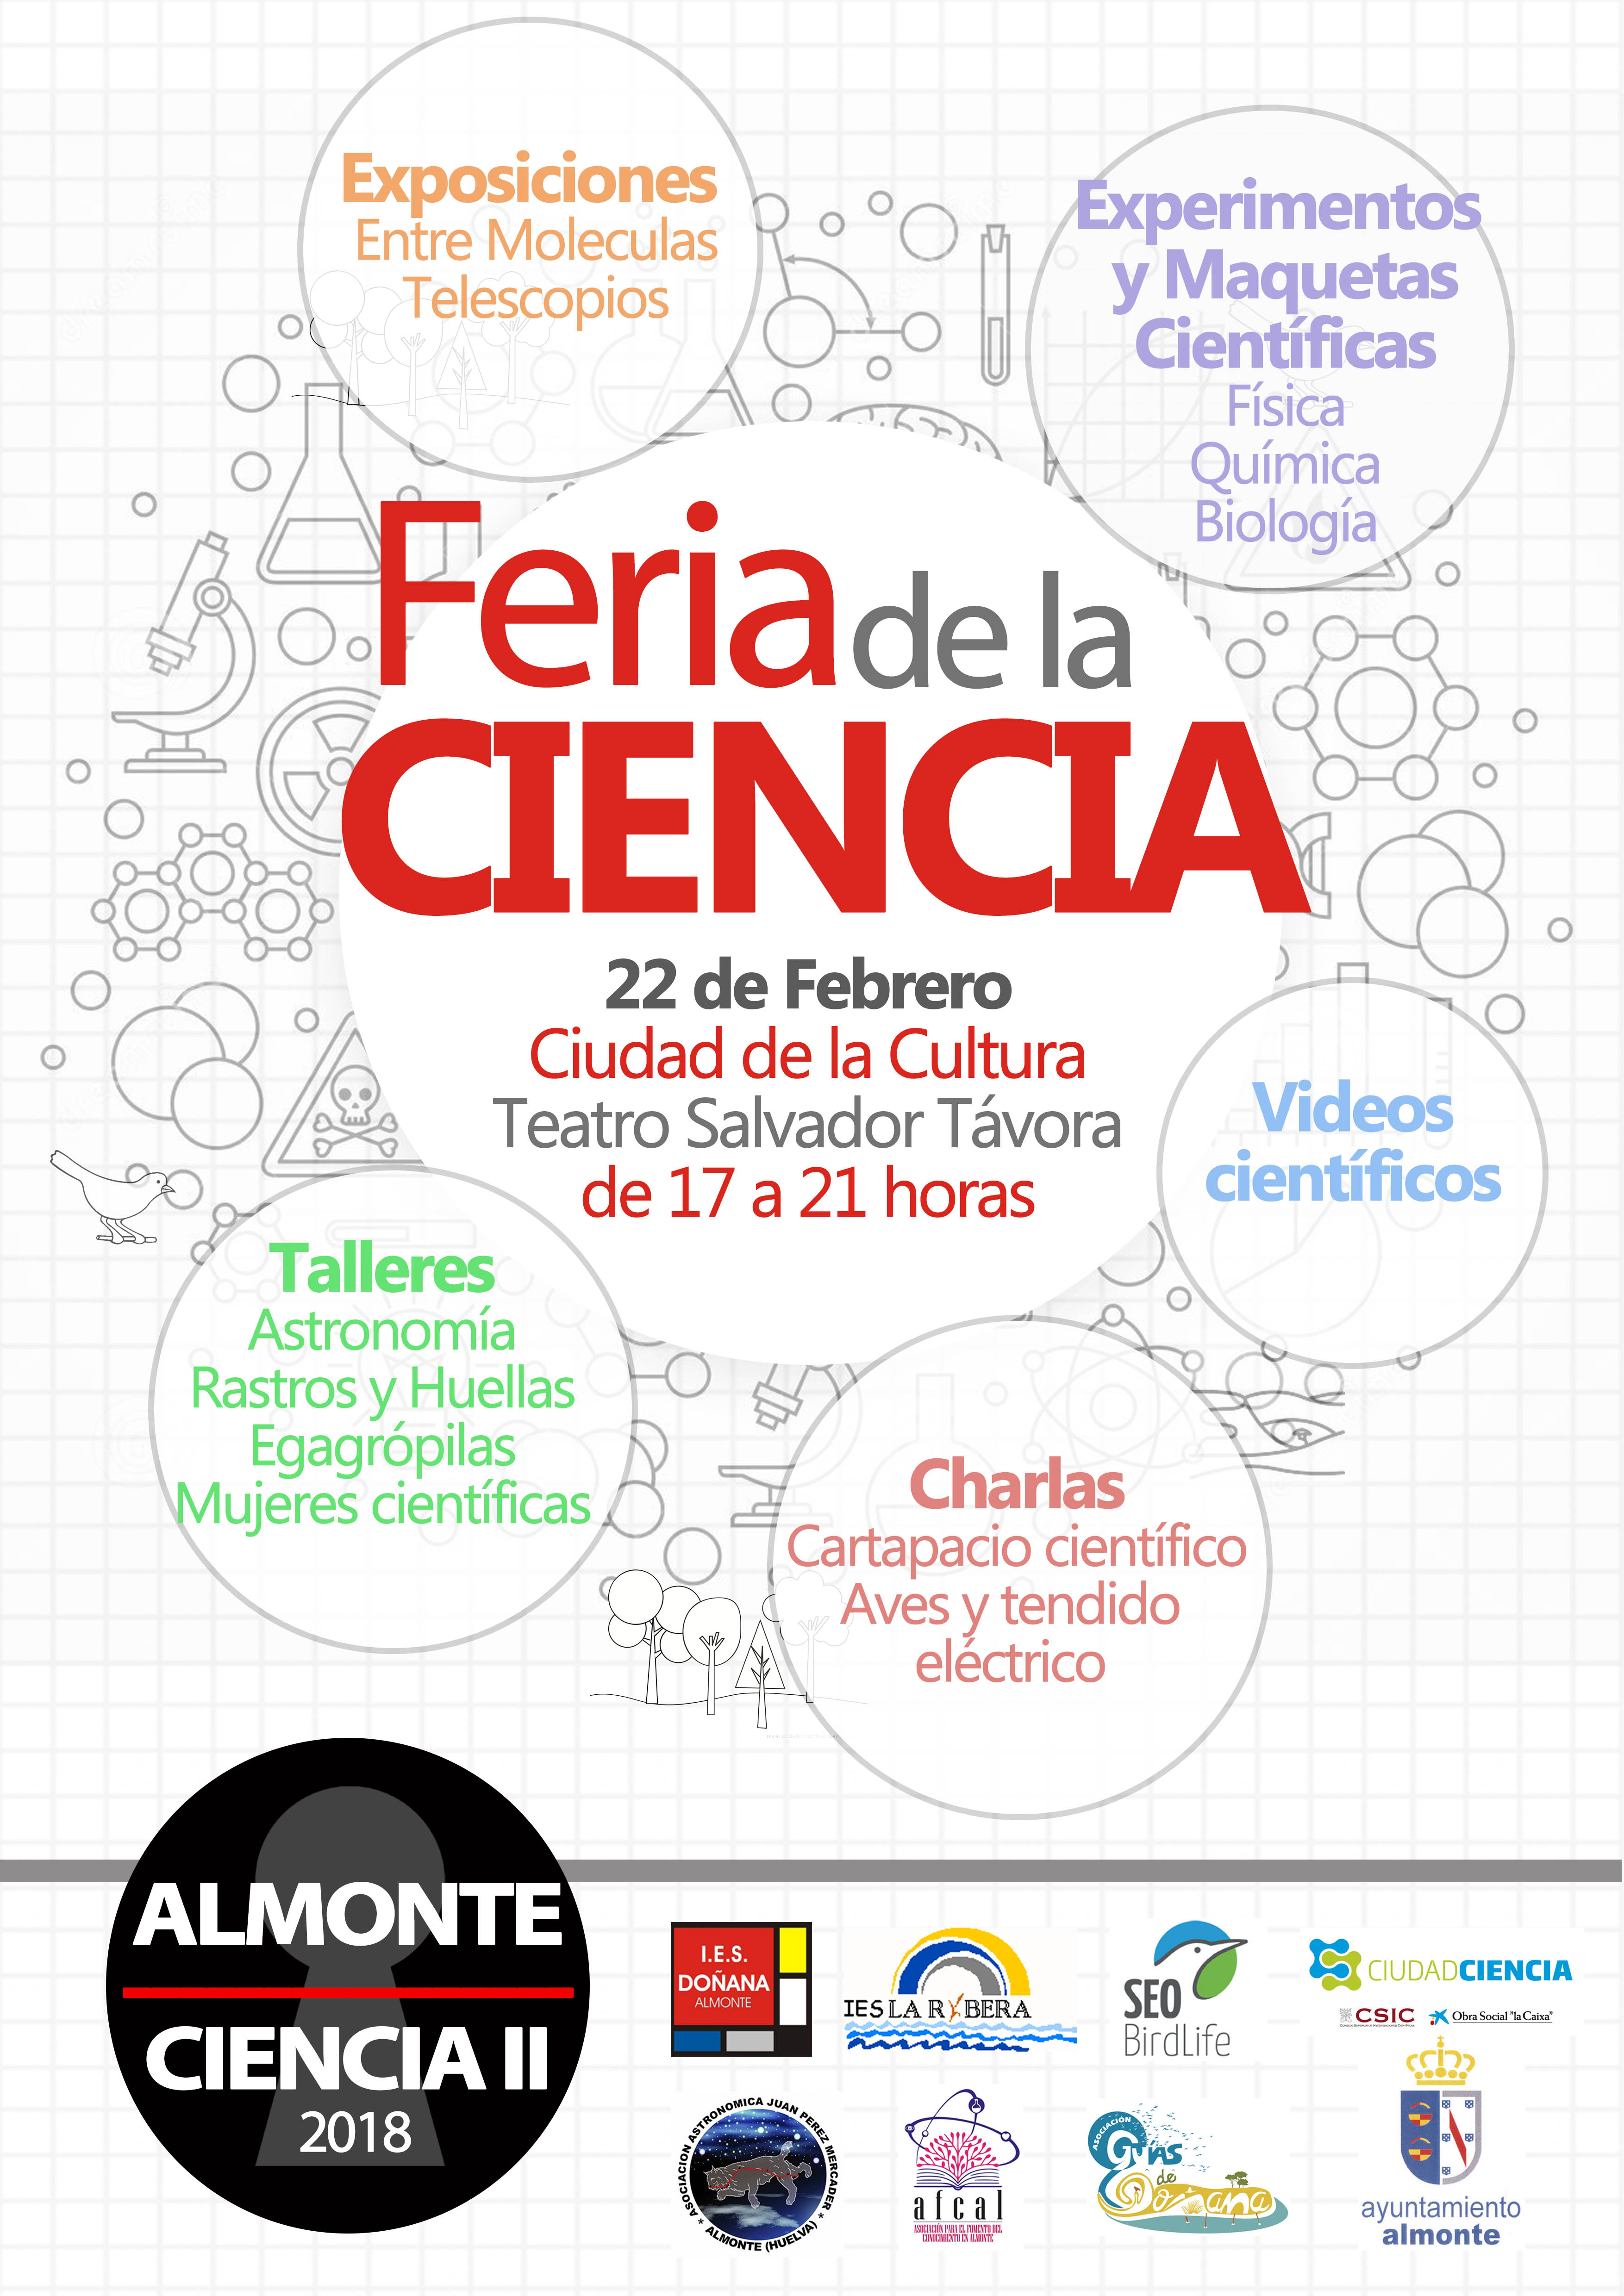 Almonte Ciencia II - Feria